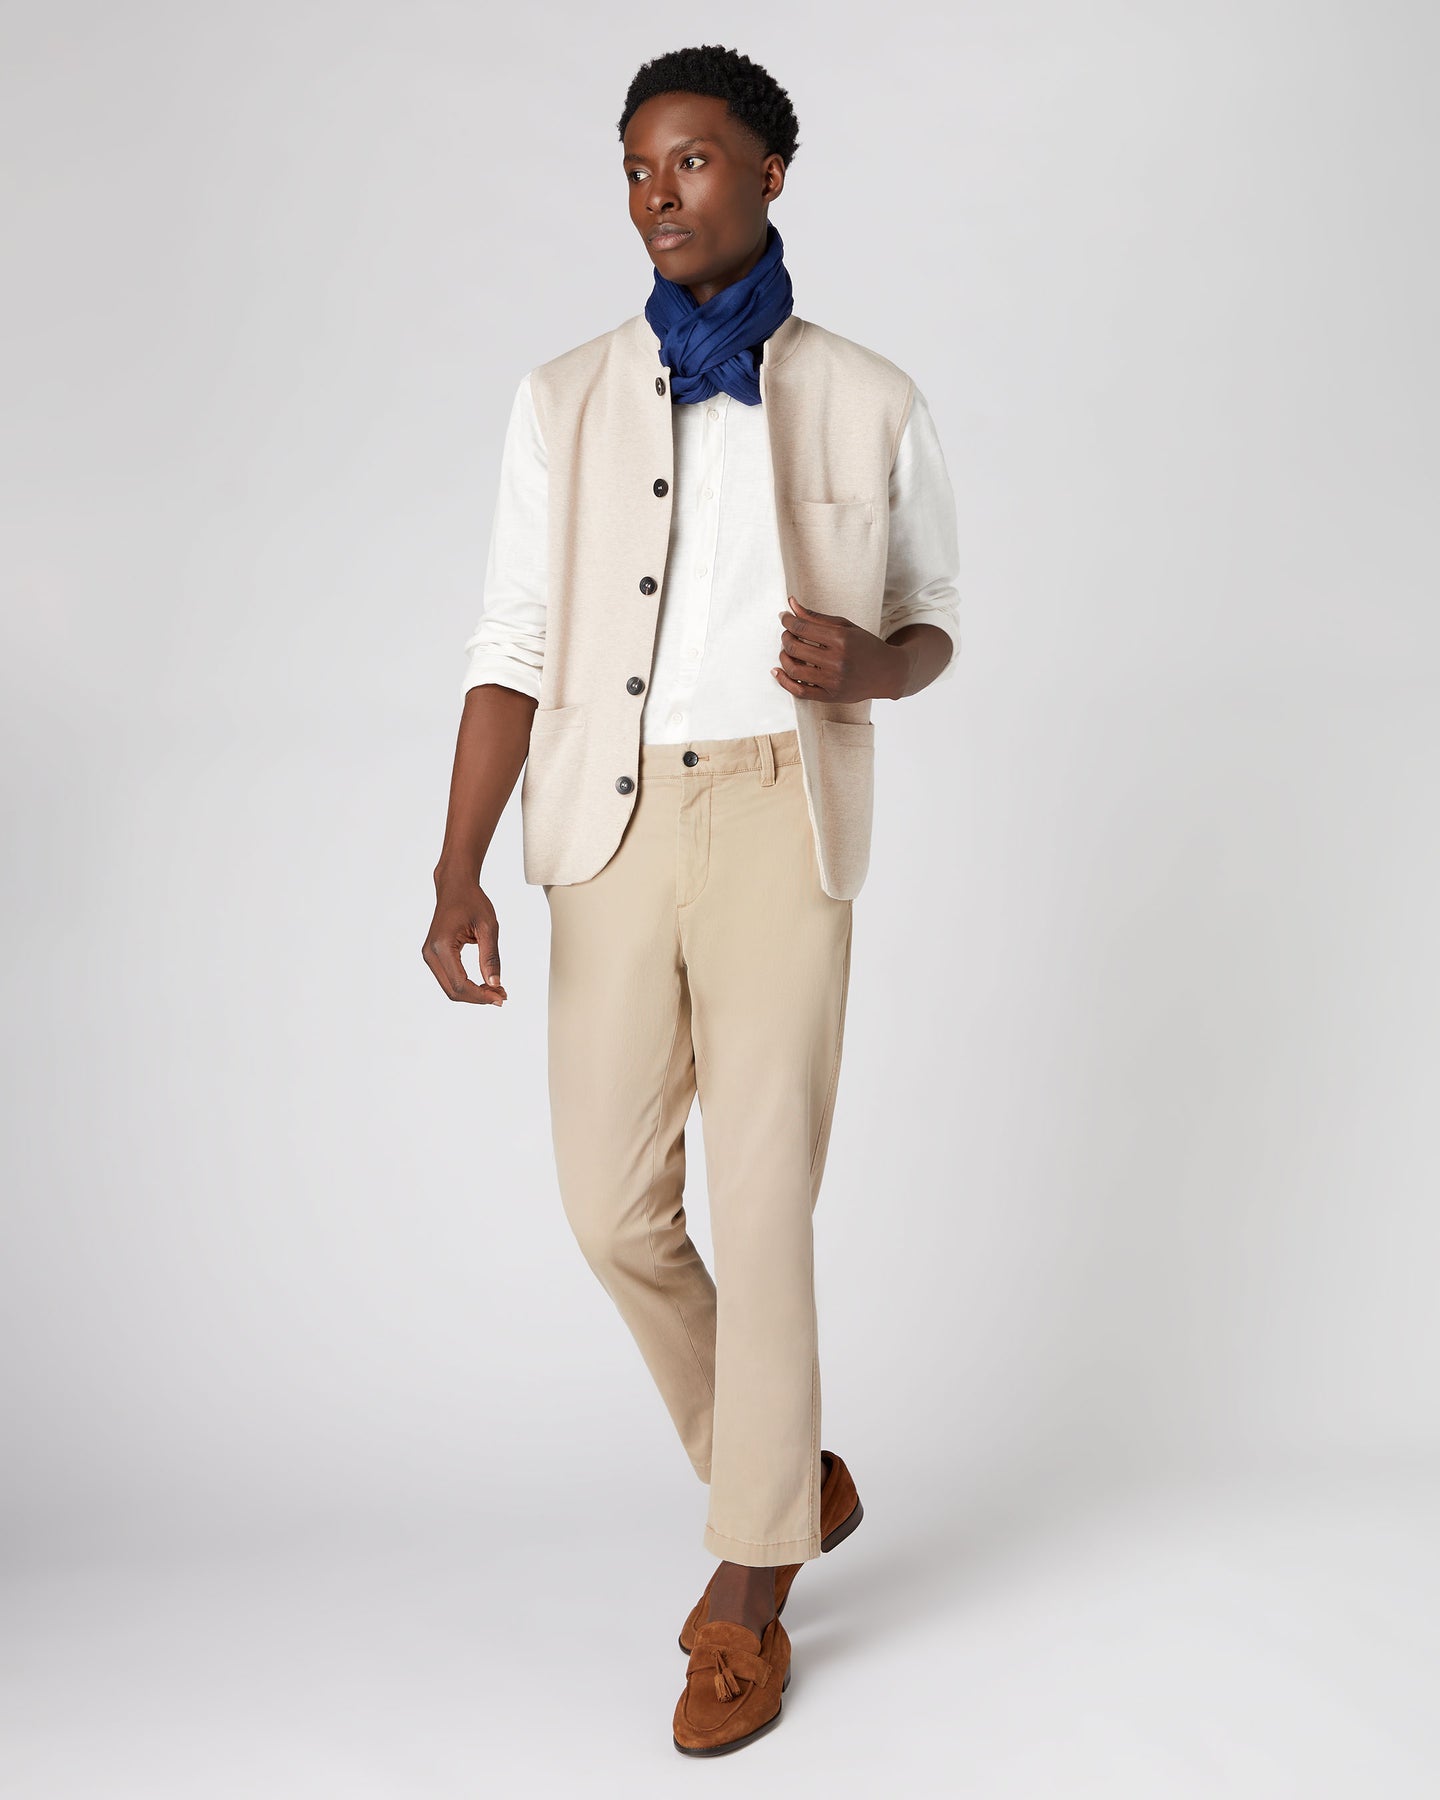 Buy Xposed Mens 3 Piece Herring Tweed Suit in Brown Retro Peaky Blinders  Style Fitted Blazer Waistcoat Trousers Online at desertcartINDIA